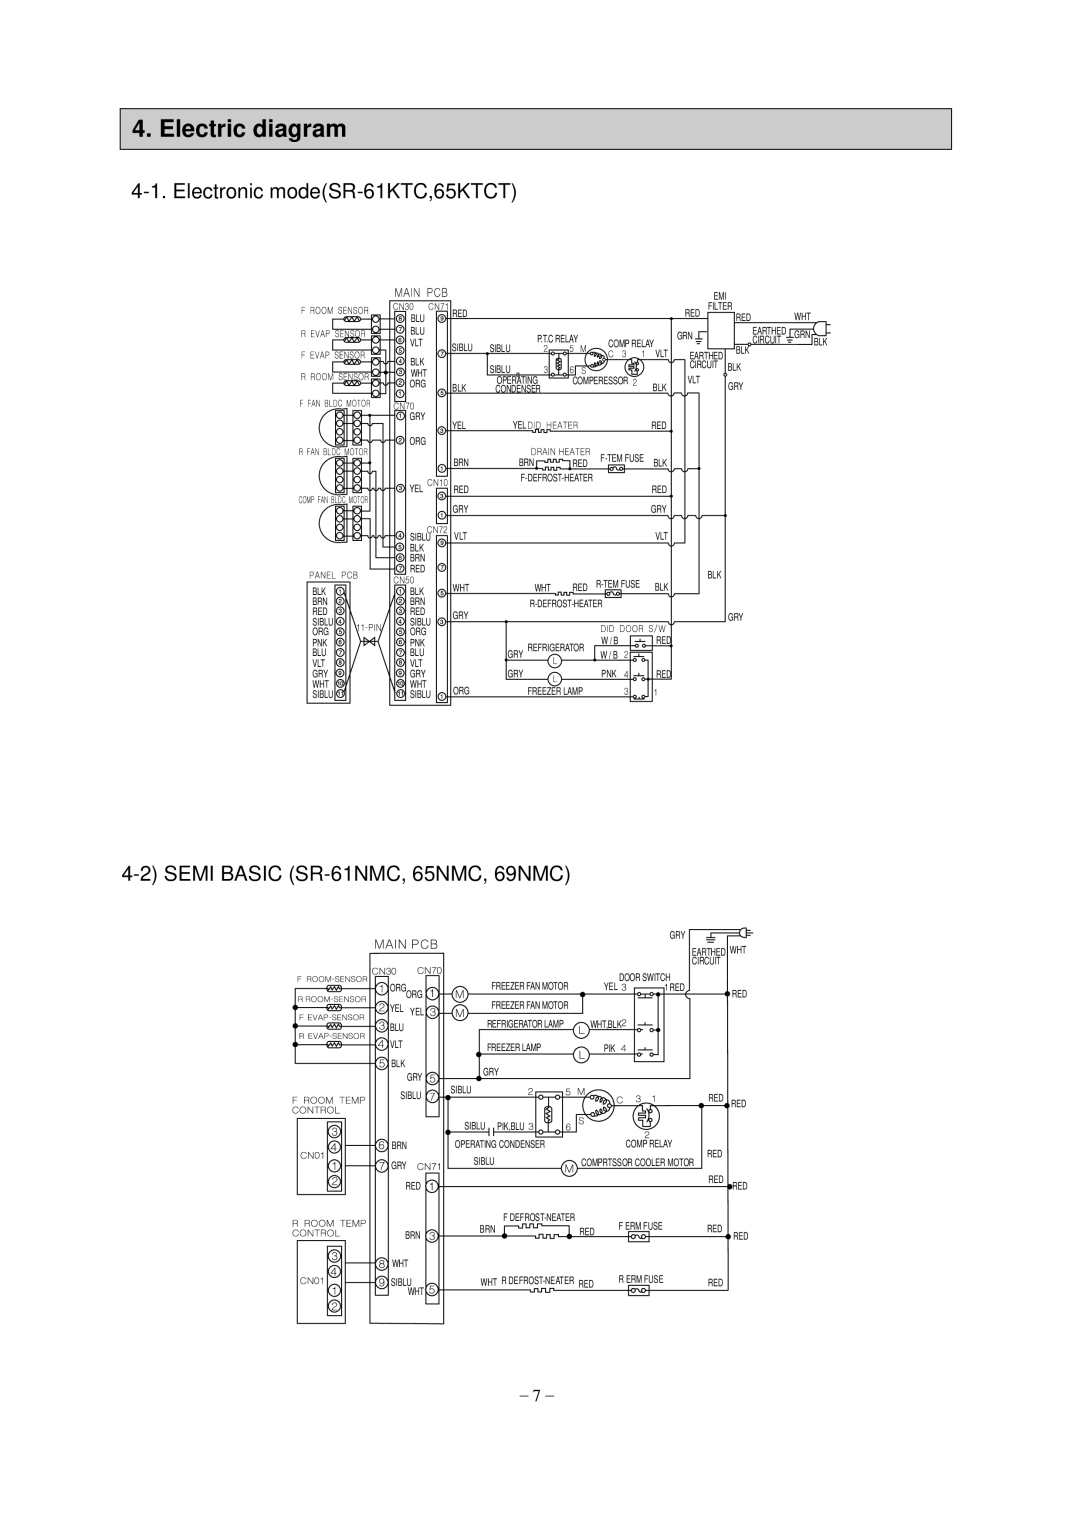 Samsung SR-69NMC, SR-65KTC, SR-65NMC Electric diagram, Electronic modeSR-61KTC,65KTCT, 4-2SEMI BASIC SR-61NMC,65NMC, 69NMC 